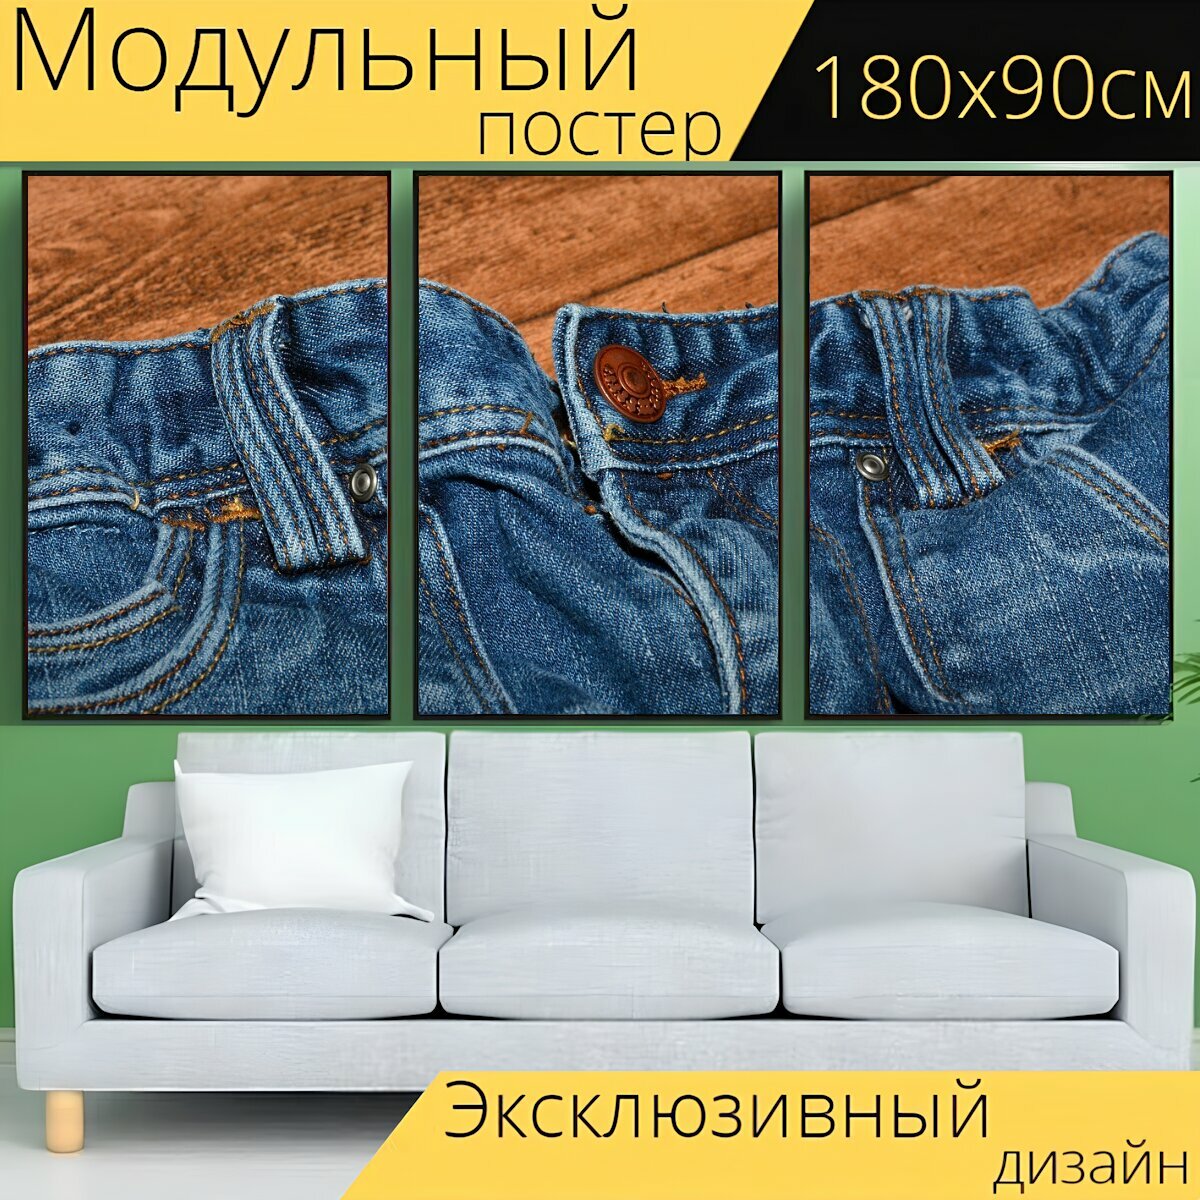 Модульный постер "Джинсы, штаны, синие джинсы" 180 x 90 см. для интерьера